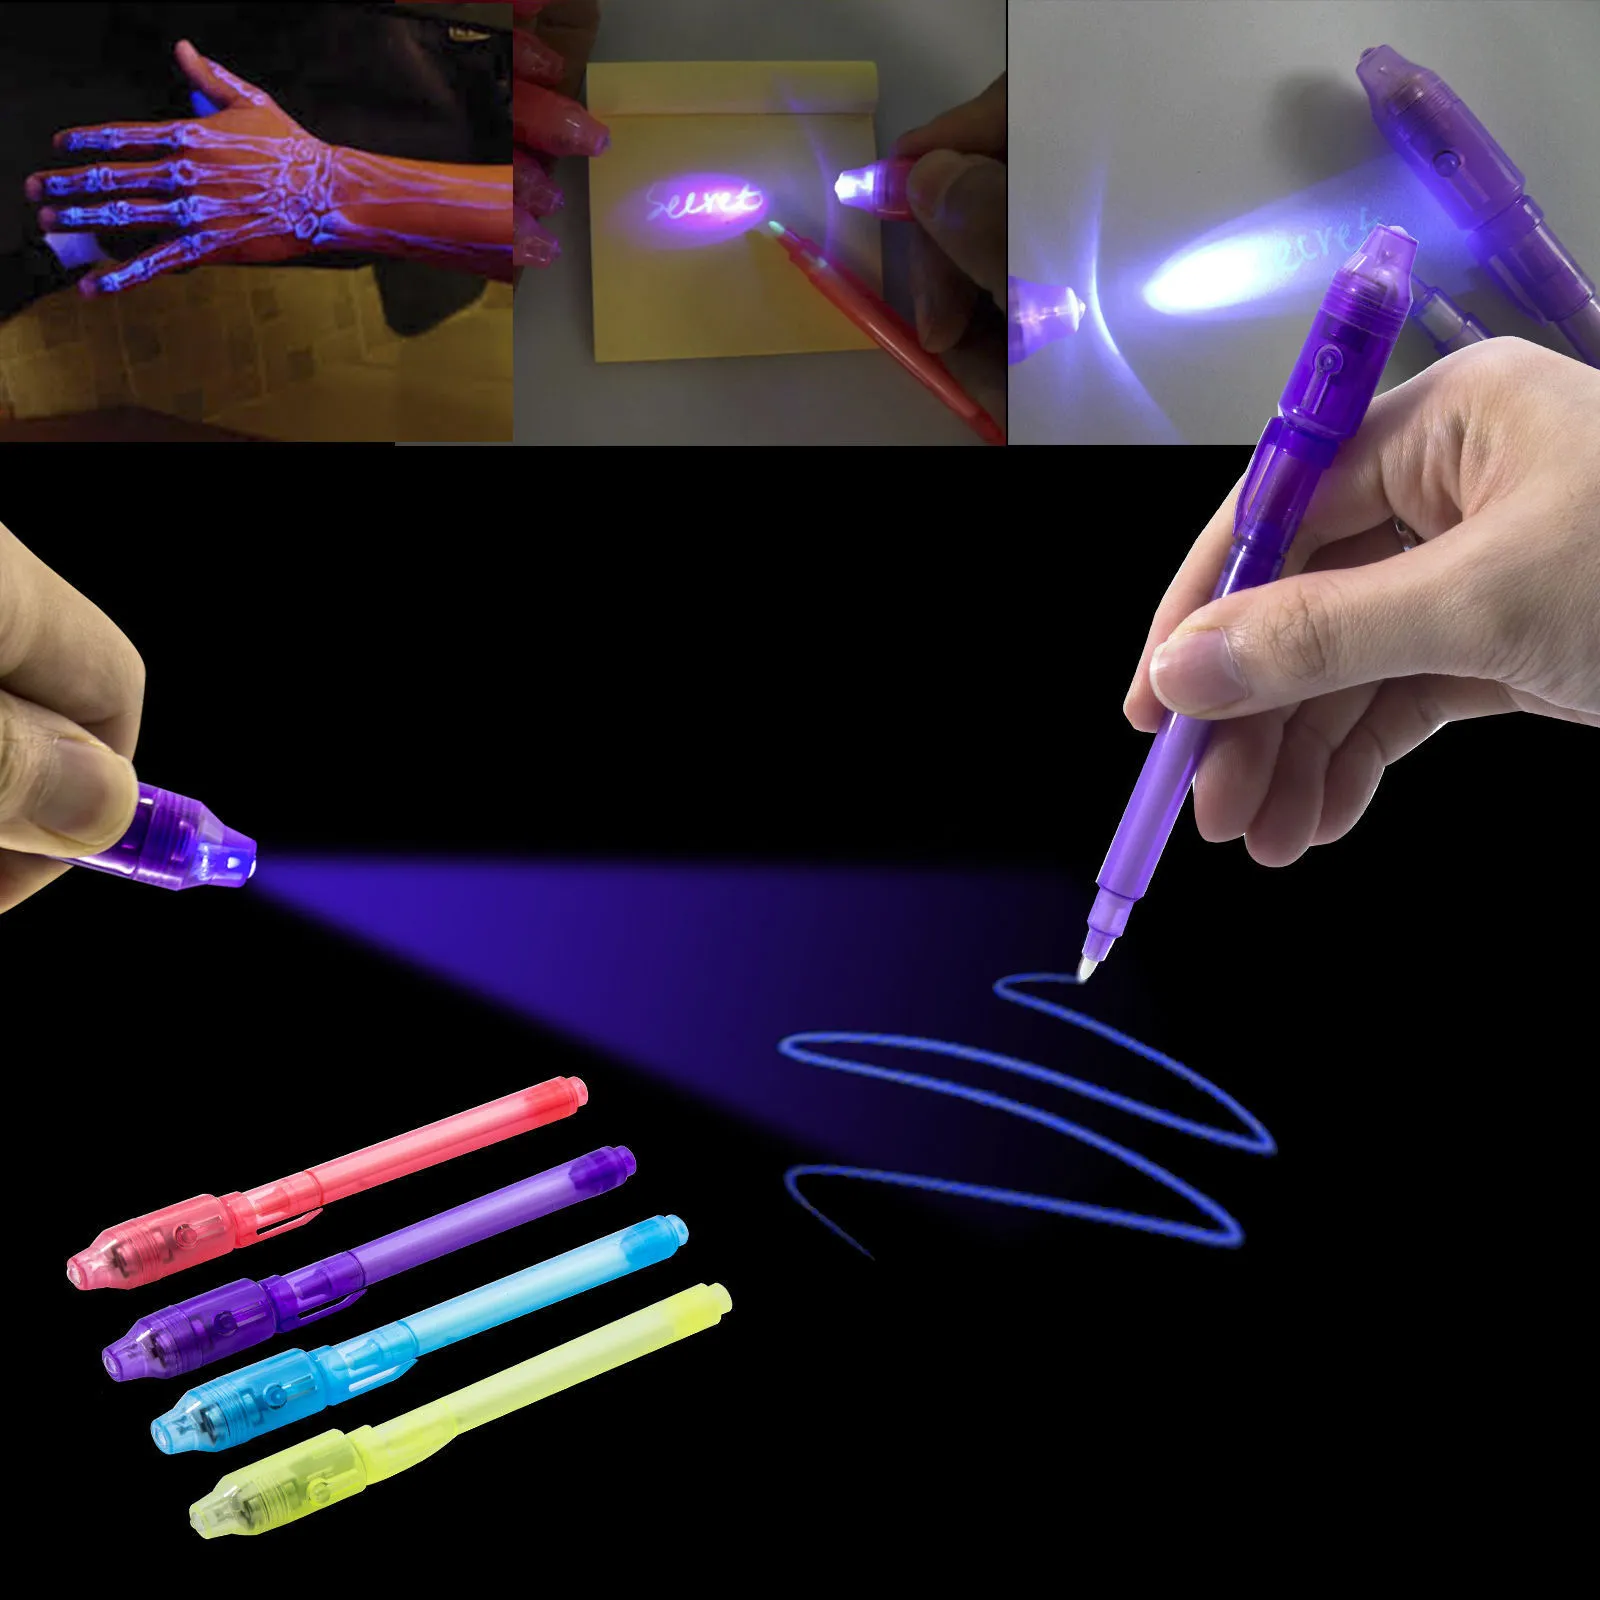 Penna a Inchiostro Invisibile 14 Pezzi, con Luce UV per messaggi